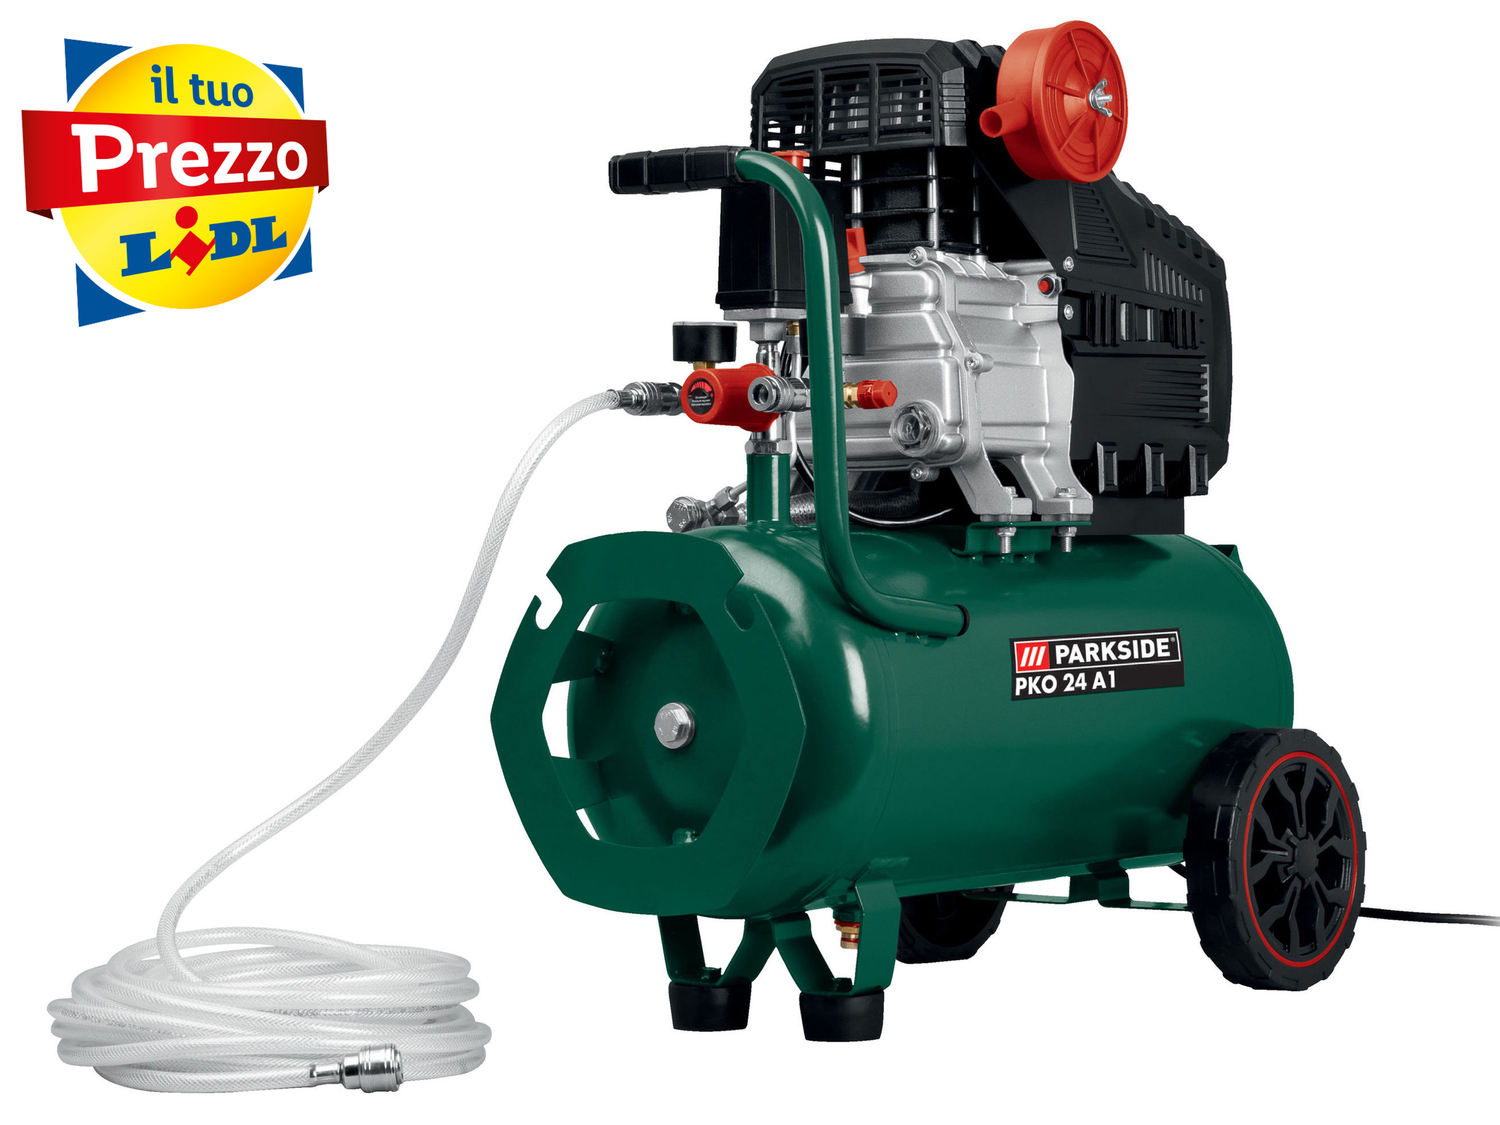 Compressore Parkside PKO 24 A1, prezzo 99.00 € 
24 L 
- Motore con lubrificazione ...